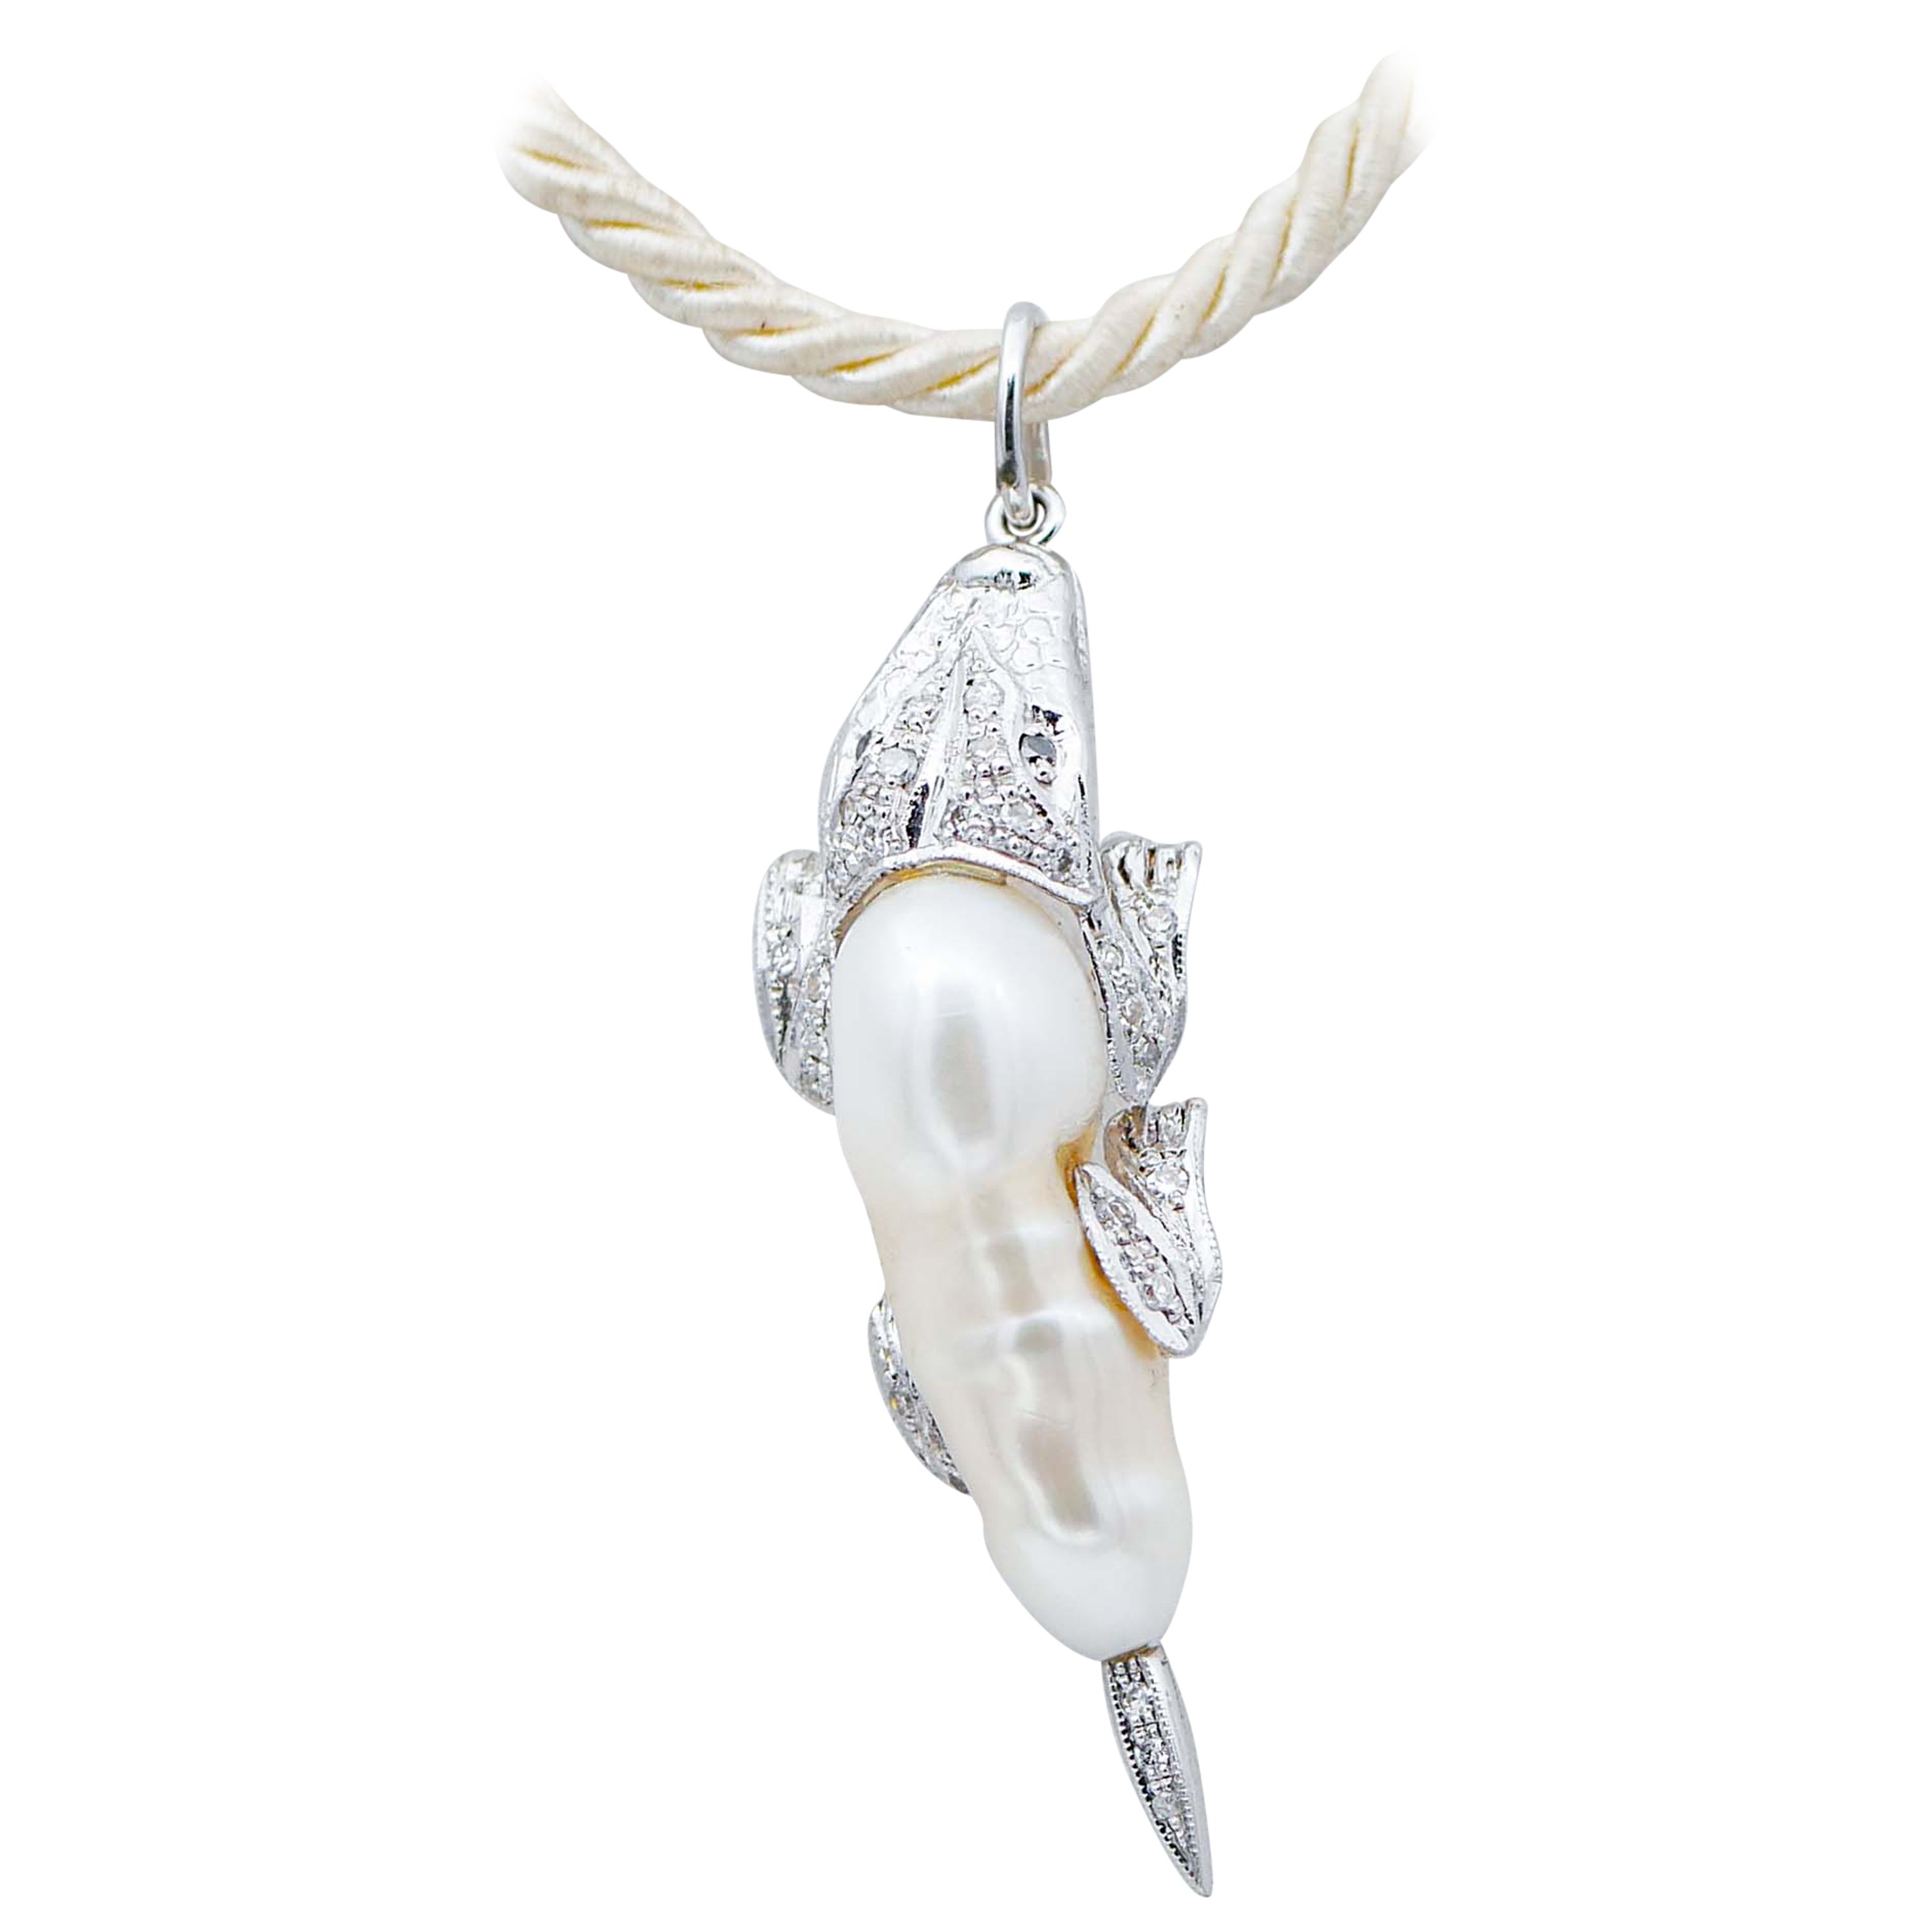 Baroque Pearl, White and Black Diamonds, 14 Kt Gold Crocodile Pendant Necklace